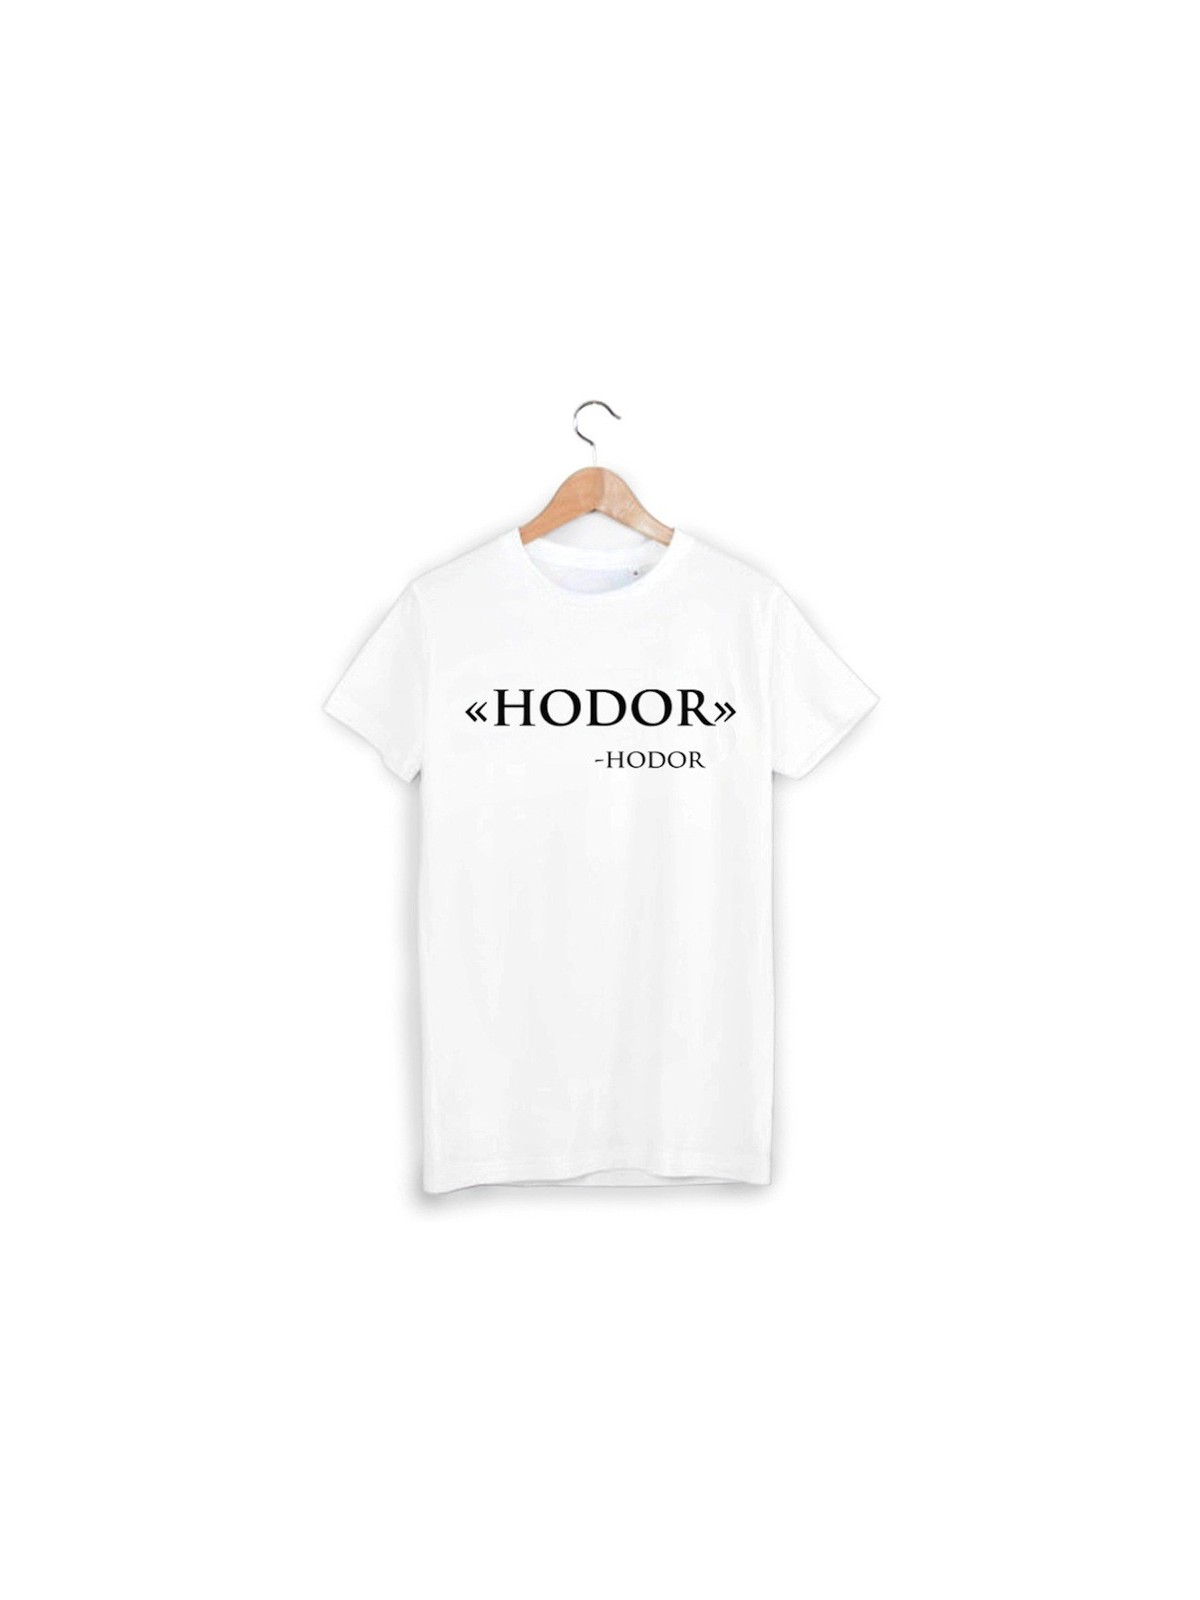 T-Shirt Hodor ref 912